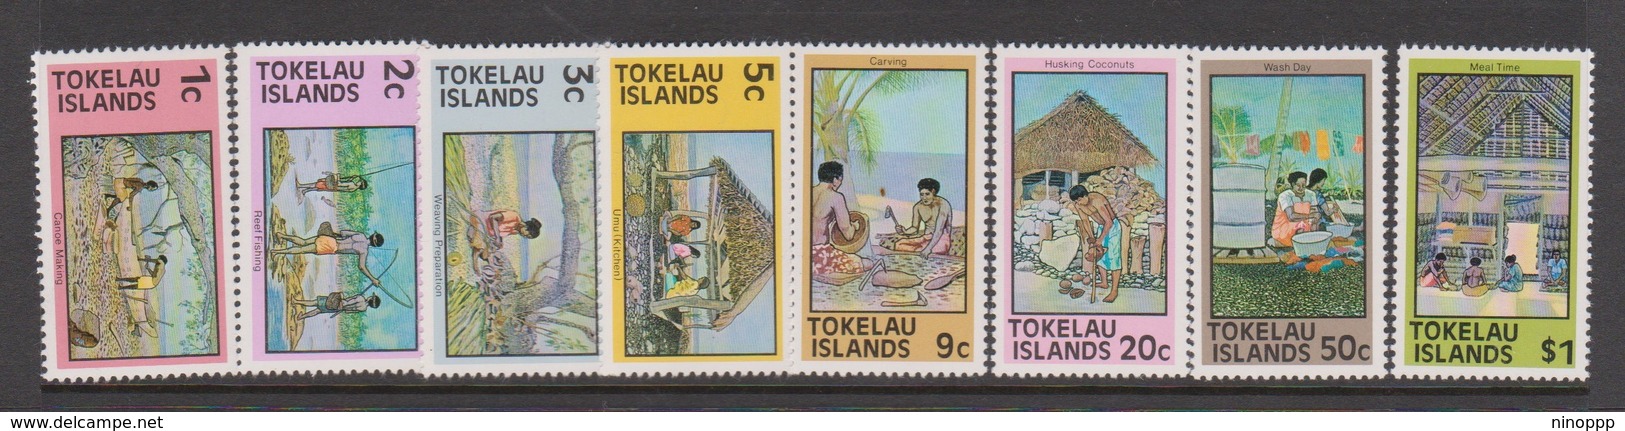 Tokelau SG 49-56 1976 Definitives,mint Never Hinged - Tokelau